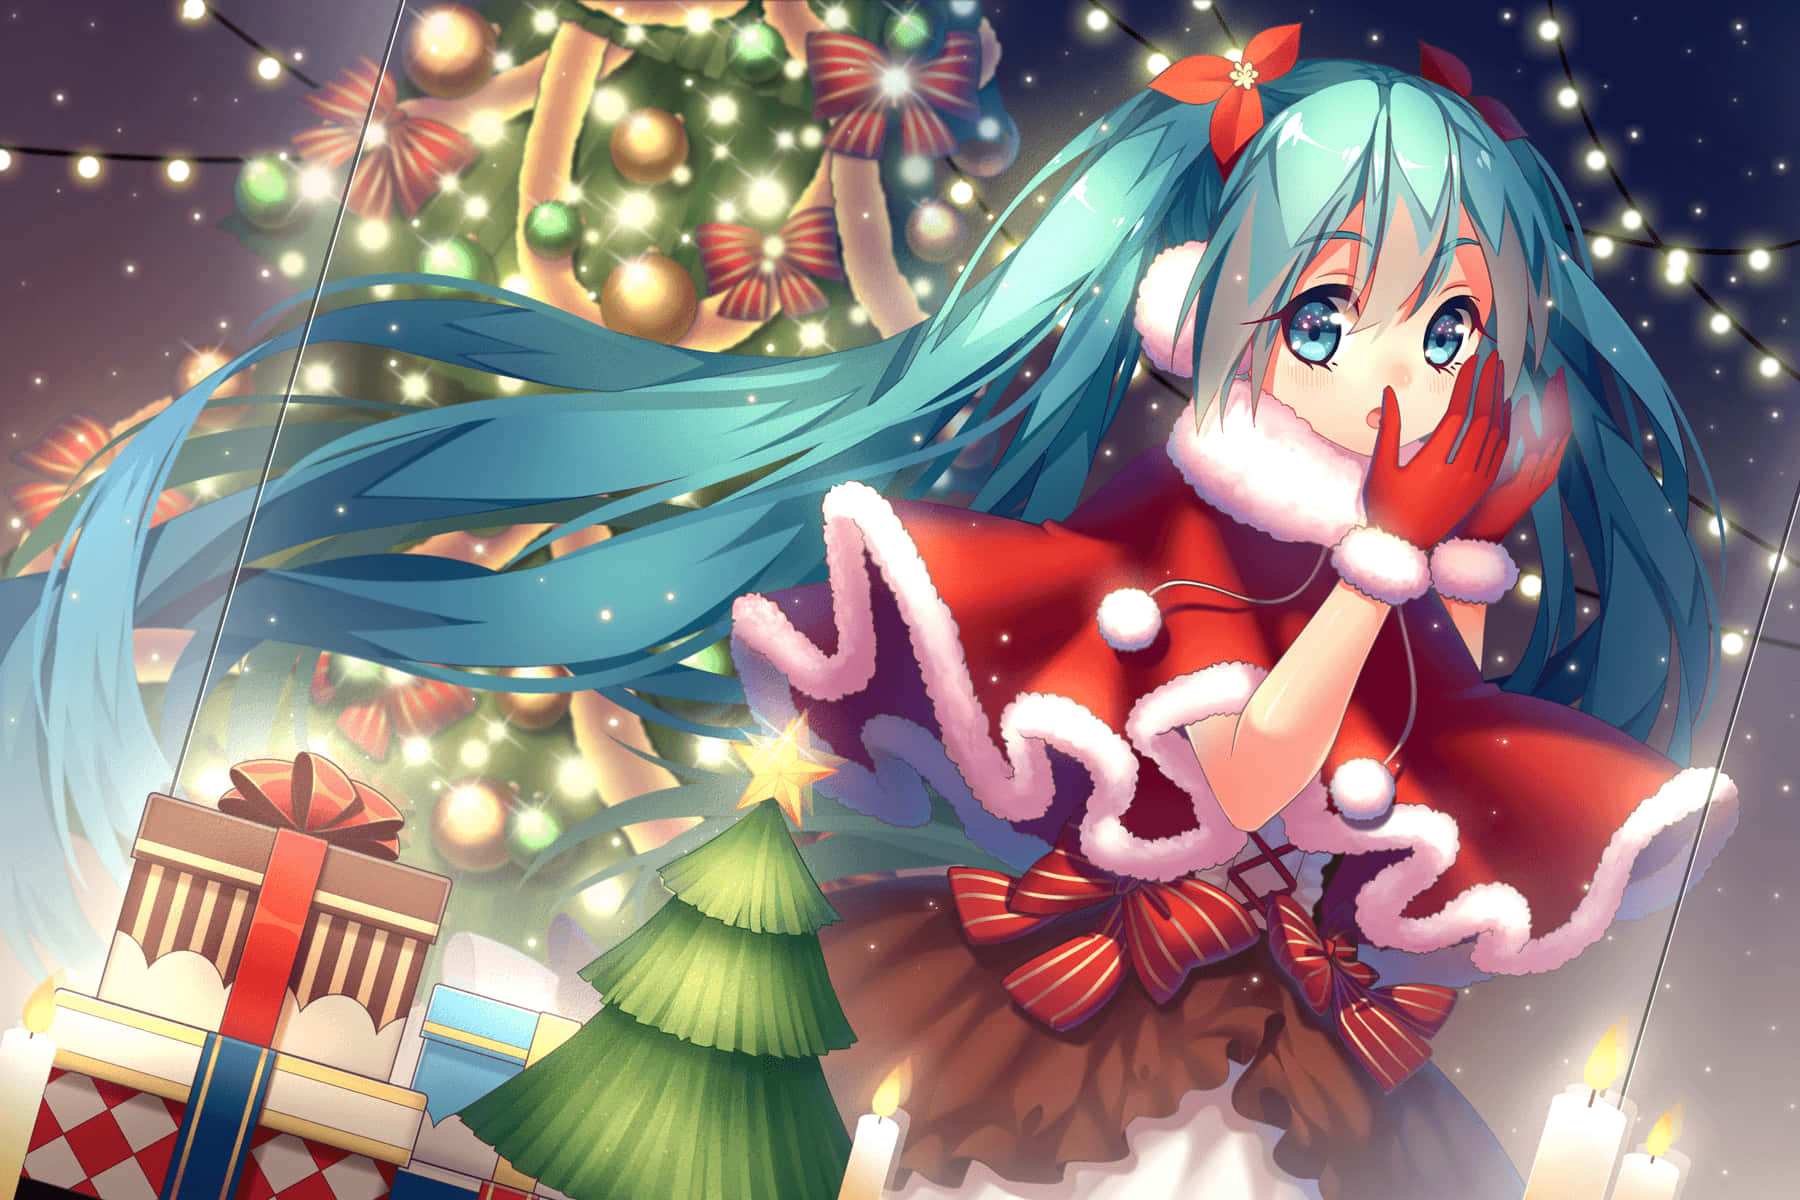 Feiernsie Weihnachten Mit Ihren Lieblings-anime-charakteren!